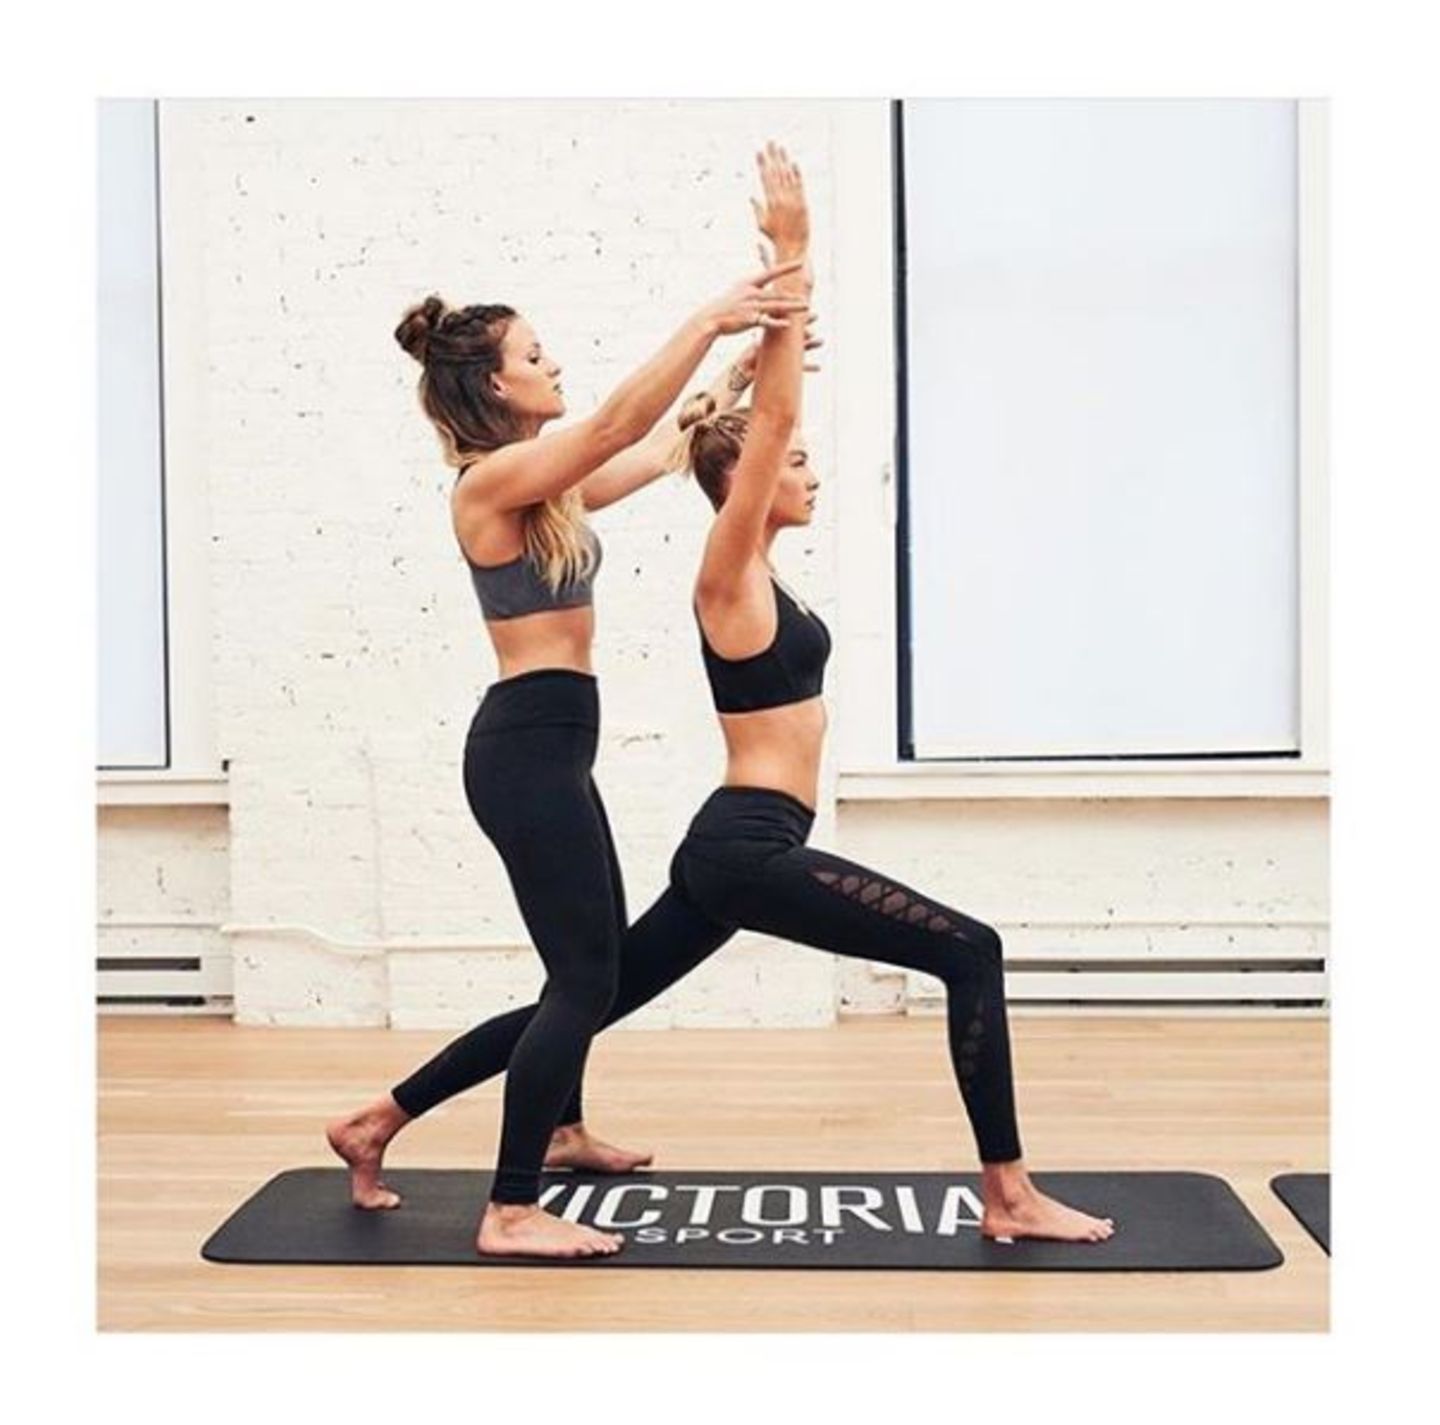 Beim Yoga tut Stella Maxwell ihrem Körper Gutes: Der hohe Ausfallschritt ("High Lunge") stärkt den kompletten Unterkörper, dehnt die Hüfte und Leiste und öffnet die Brust. Das Ergebnis: lange, schmale Muskeln.